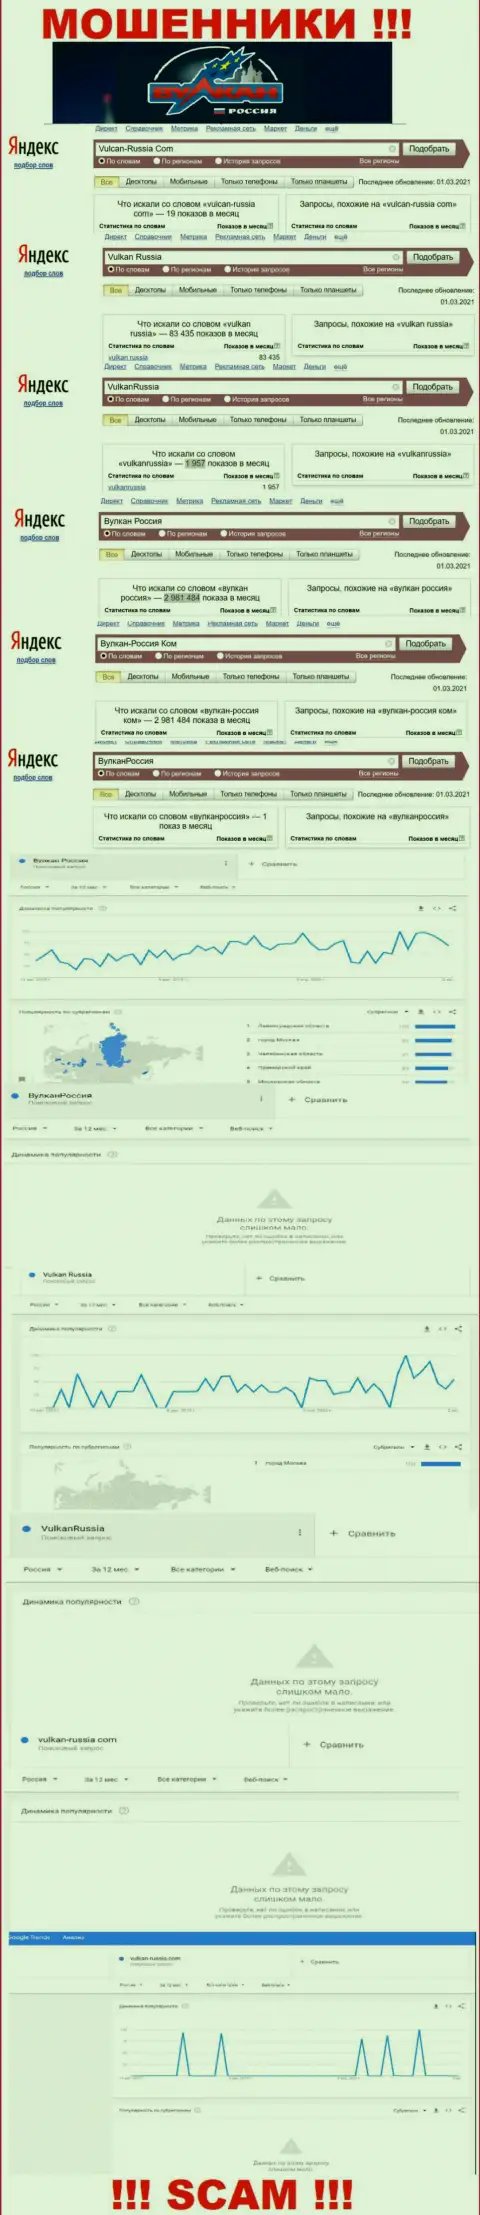 Статистика суммарного числа обзоров данных о ворах Вулкан Россия в сети internet